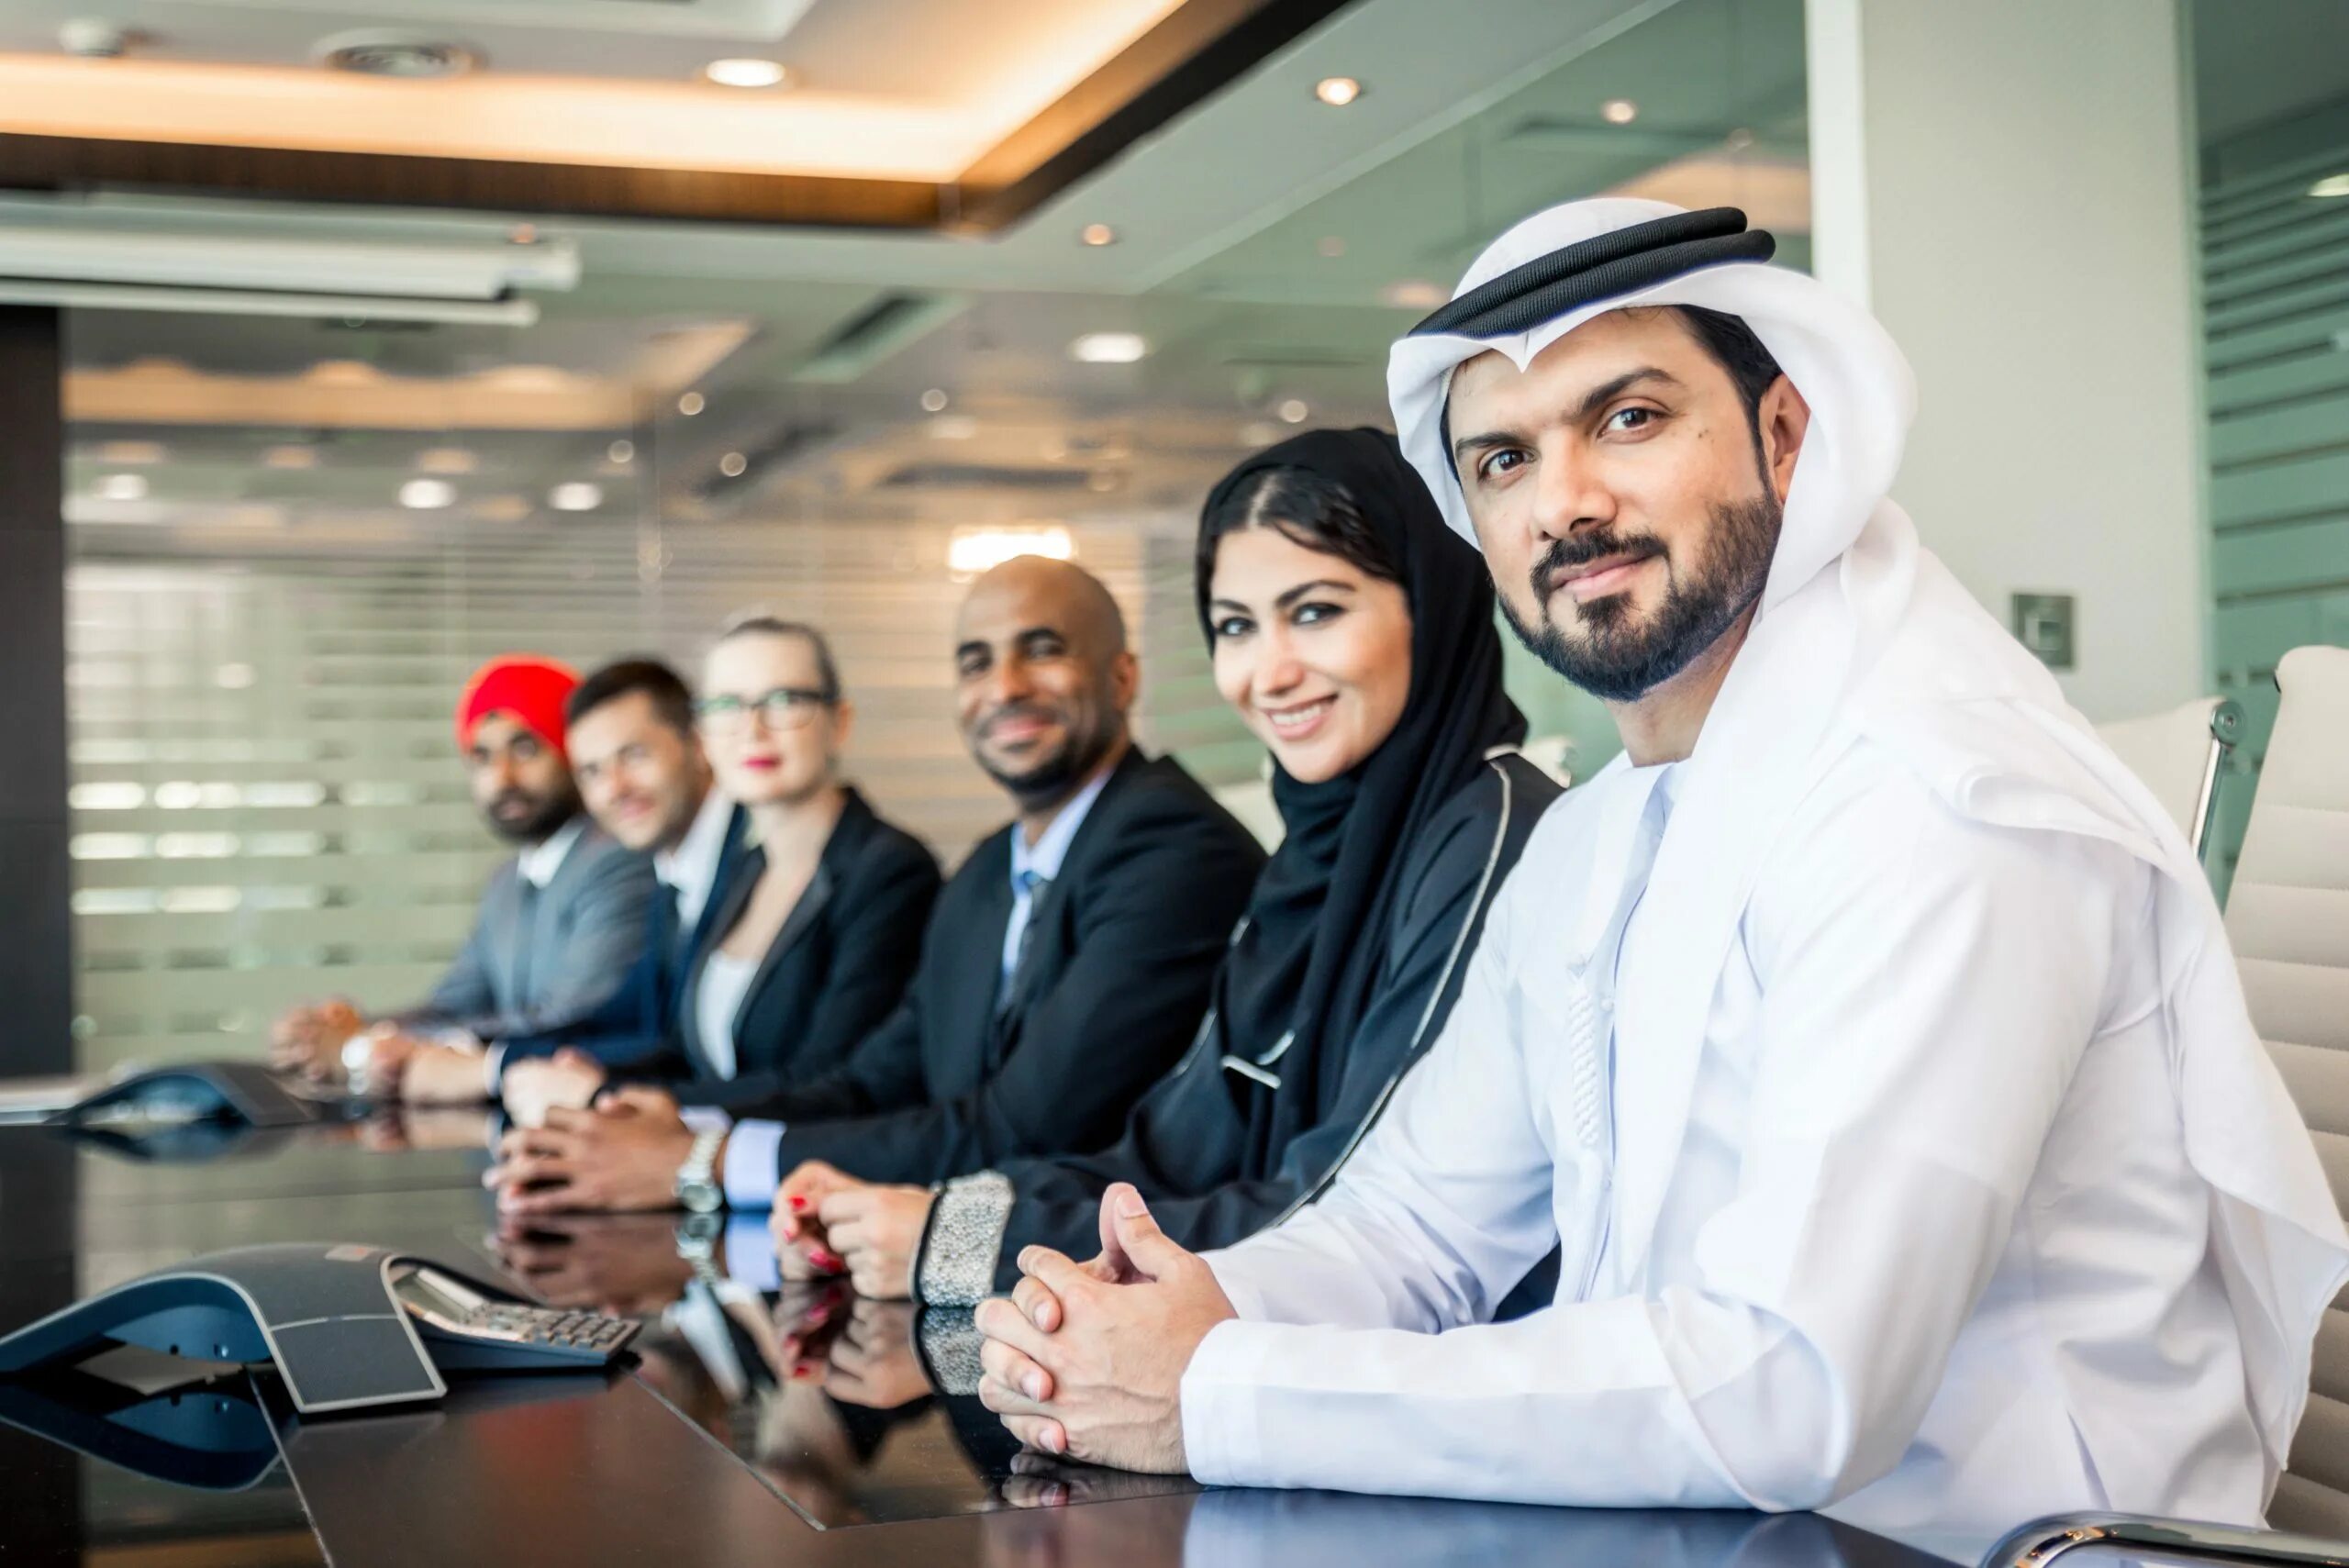 Переговоры восточные. Переговоры с арабами. Женщины и бизнес в ОАЭ. Арабы менеджмент. Деловые переговоры Дубай.